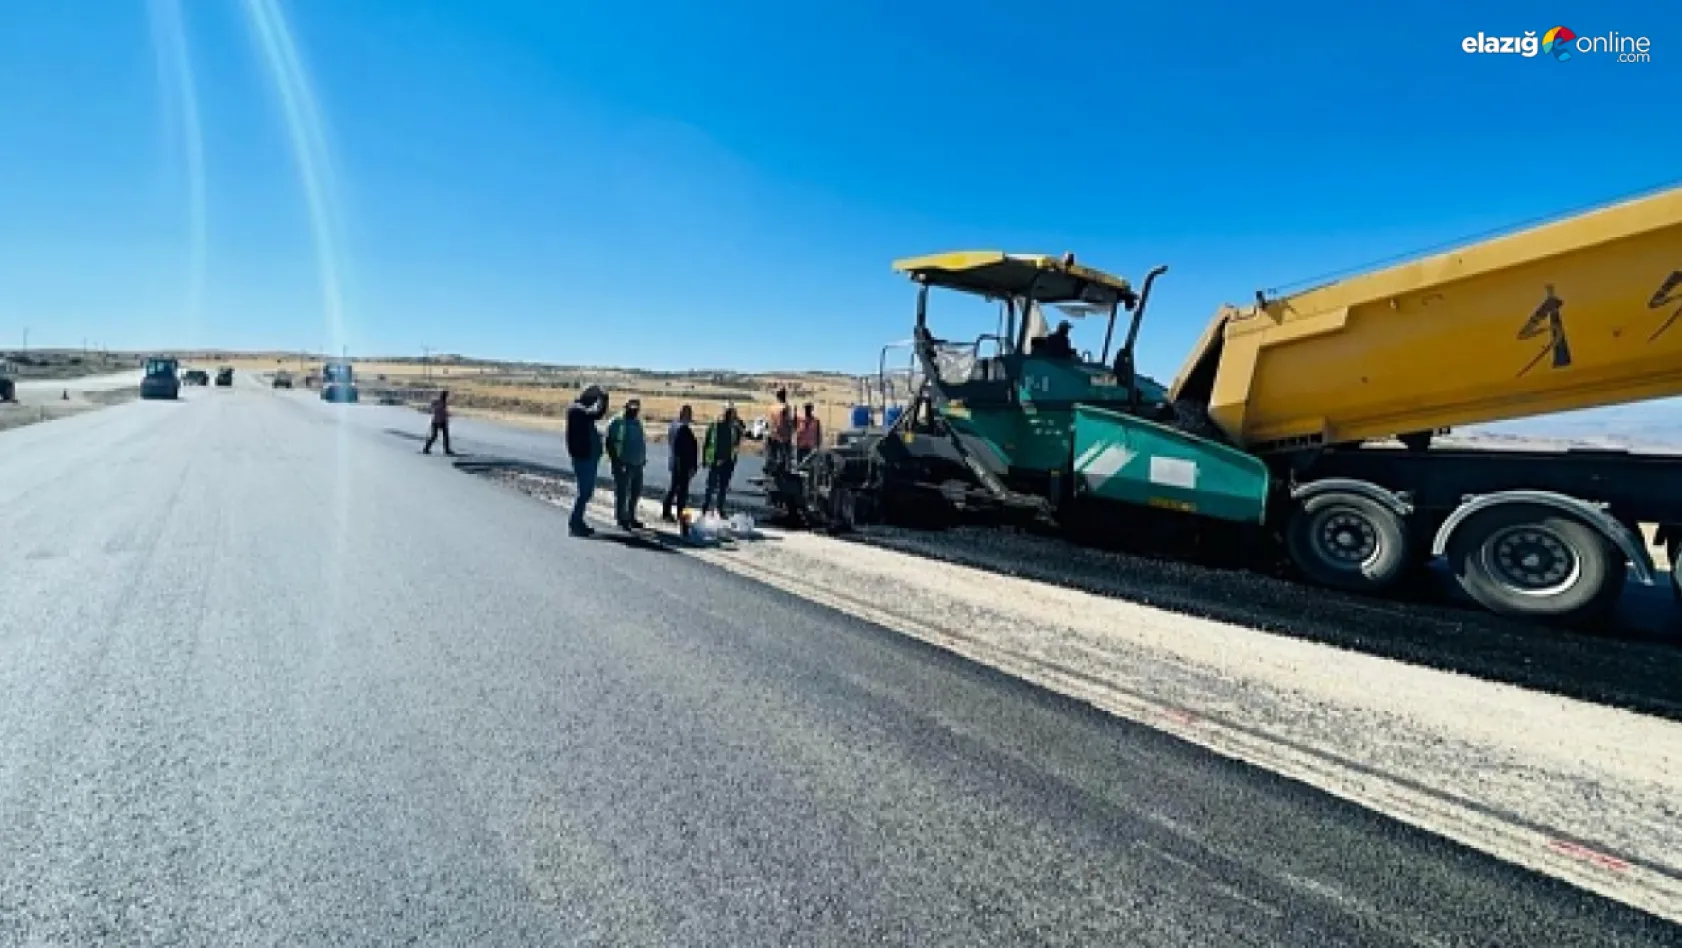 Elazığ – Harput yolu yol yapım ve asfaltlama çalışmalarında sona gelindi